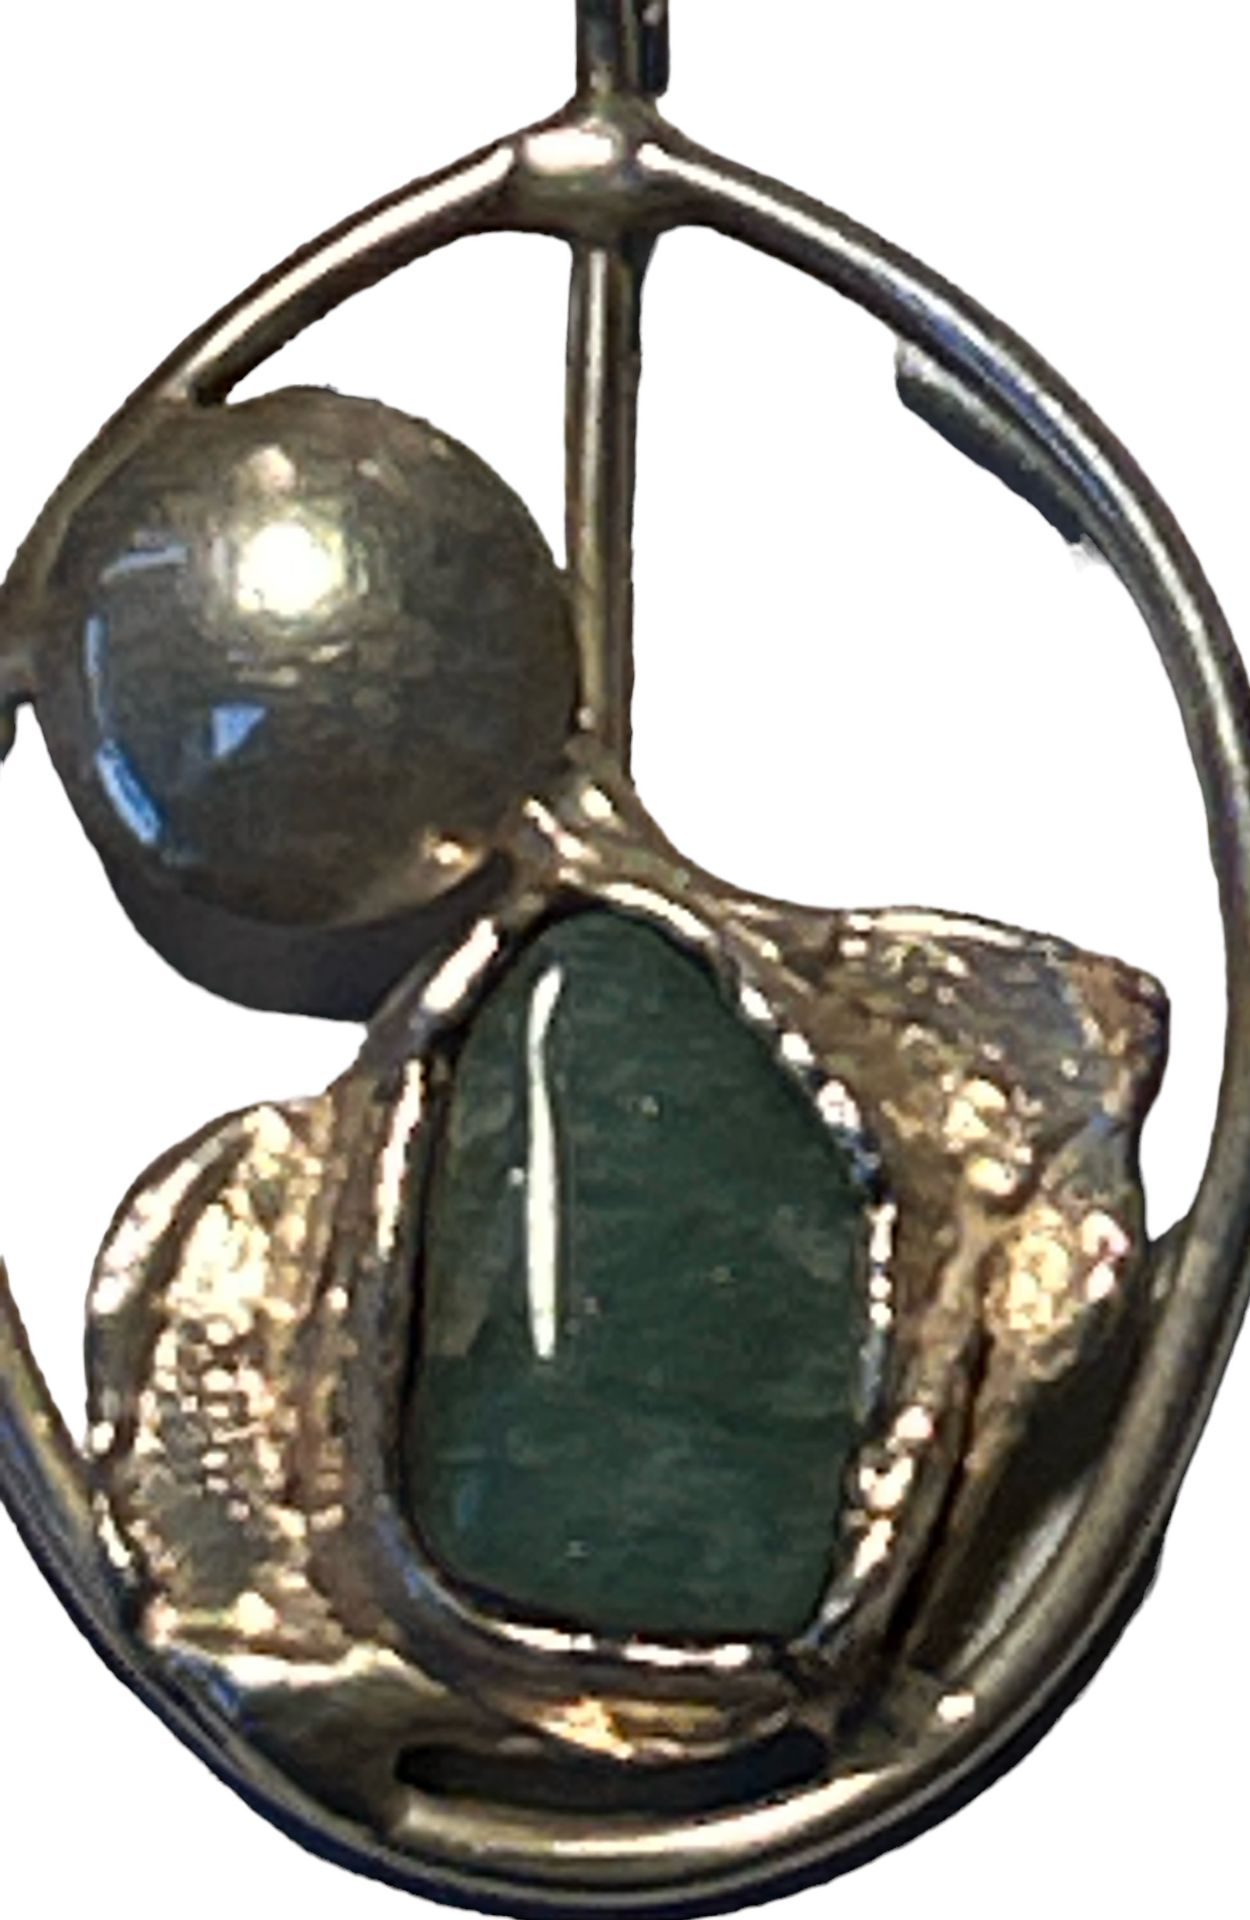 gr. Silber-Designer Anhänger mit grünen Stein, Handarbeit, 7x4 cm, vergoldet??, 34 gr. Rand unleser - Bild 4 aus 6